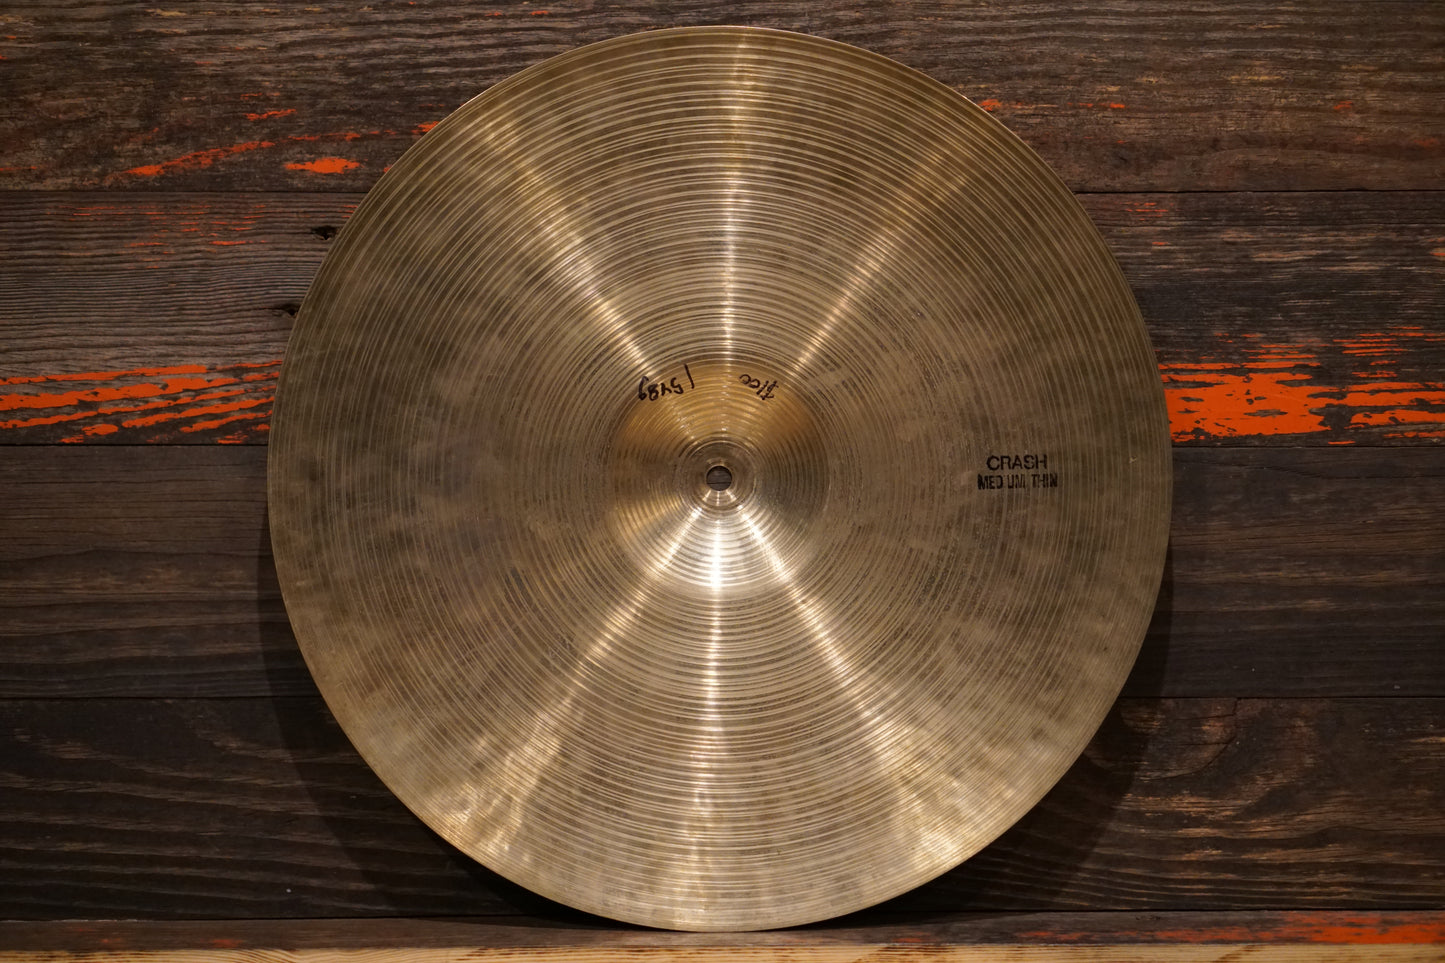 Zanki 18" Rotocasting Medium Thin Crash Cymbal - 1548g